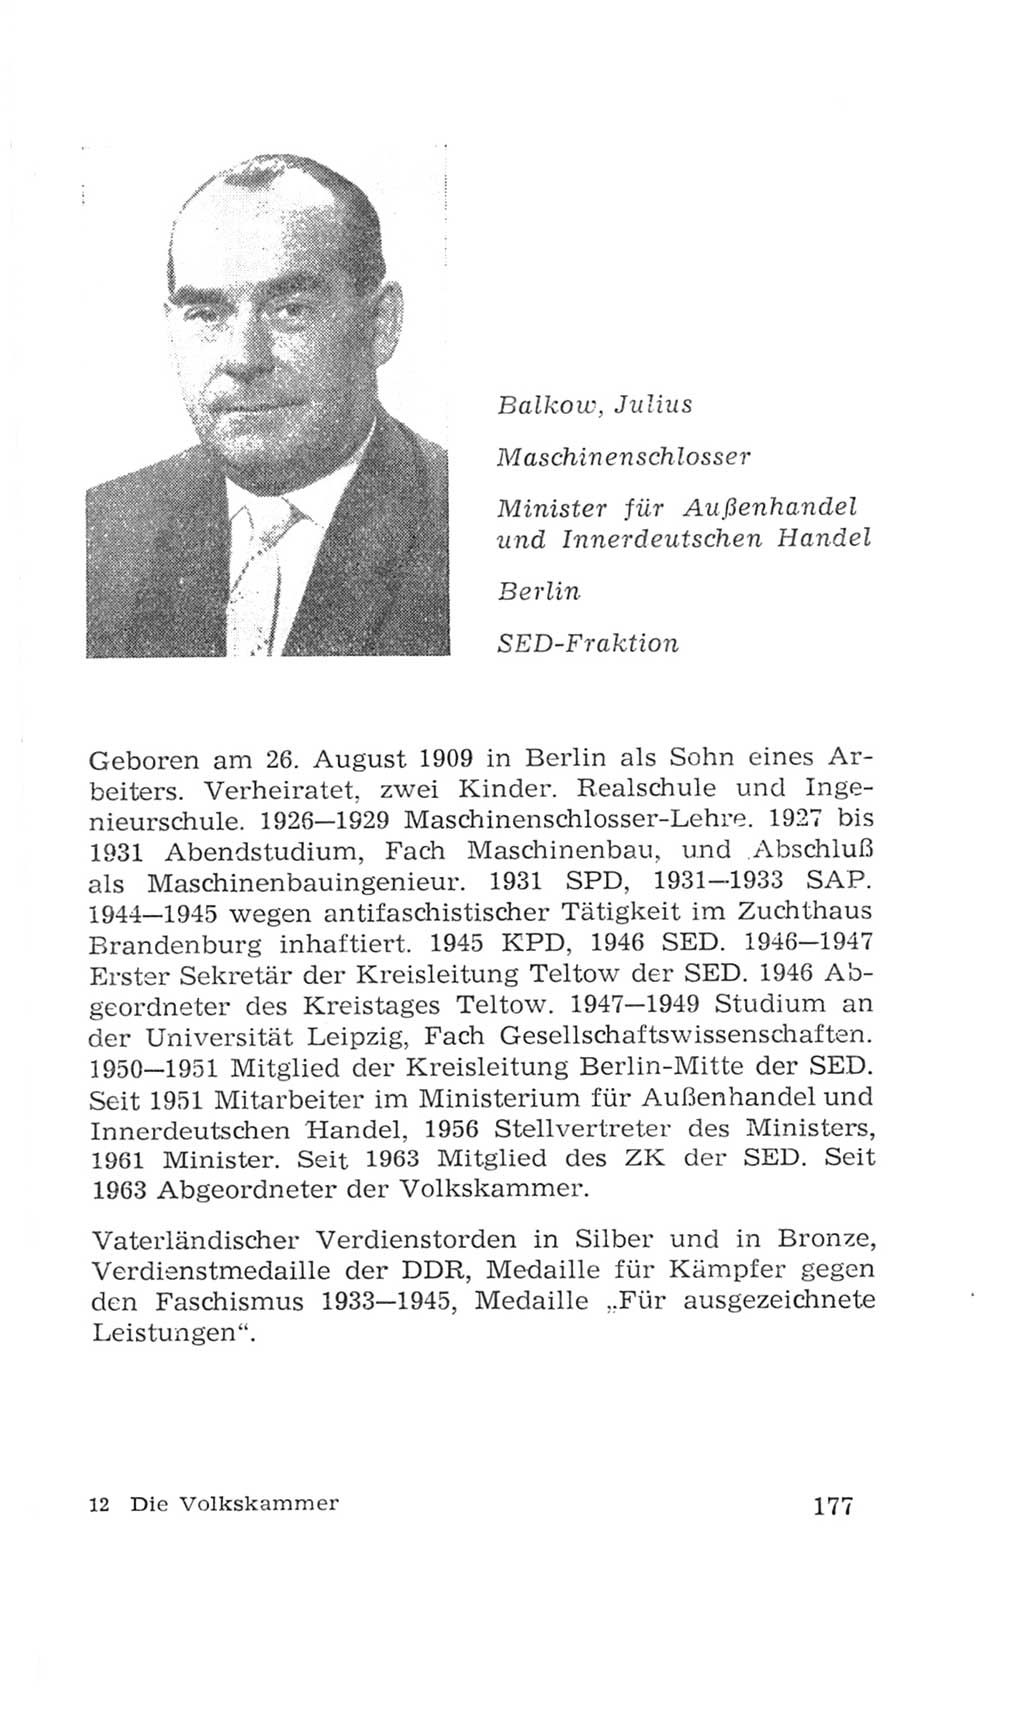 Volkskammer (VK) der Deutschen Demokratischen Republik (DDR), 4. Wahlperiode 1963-1967, Seite 177 (VK. DDR 4. WP. 1963-1967, S. 177)